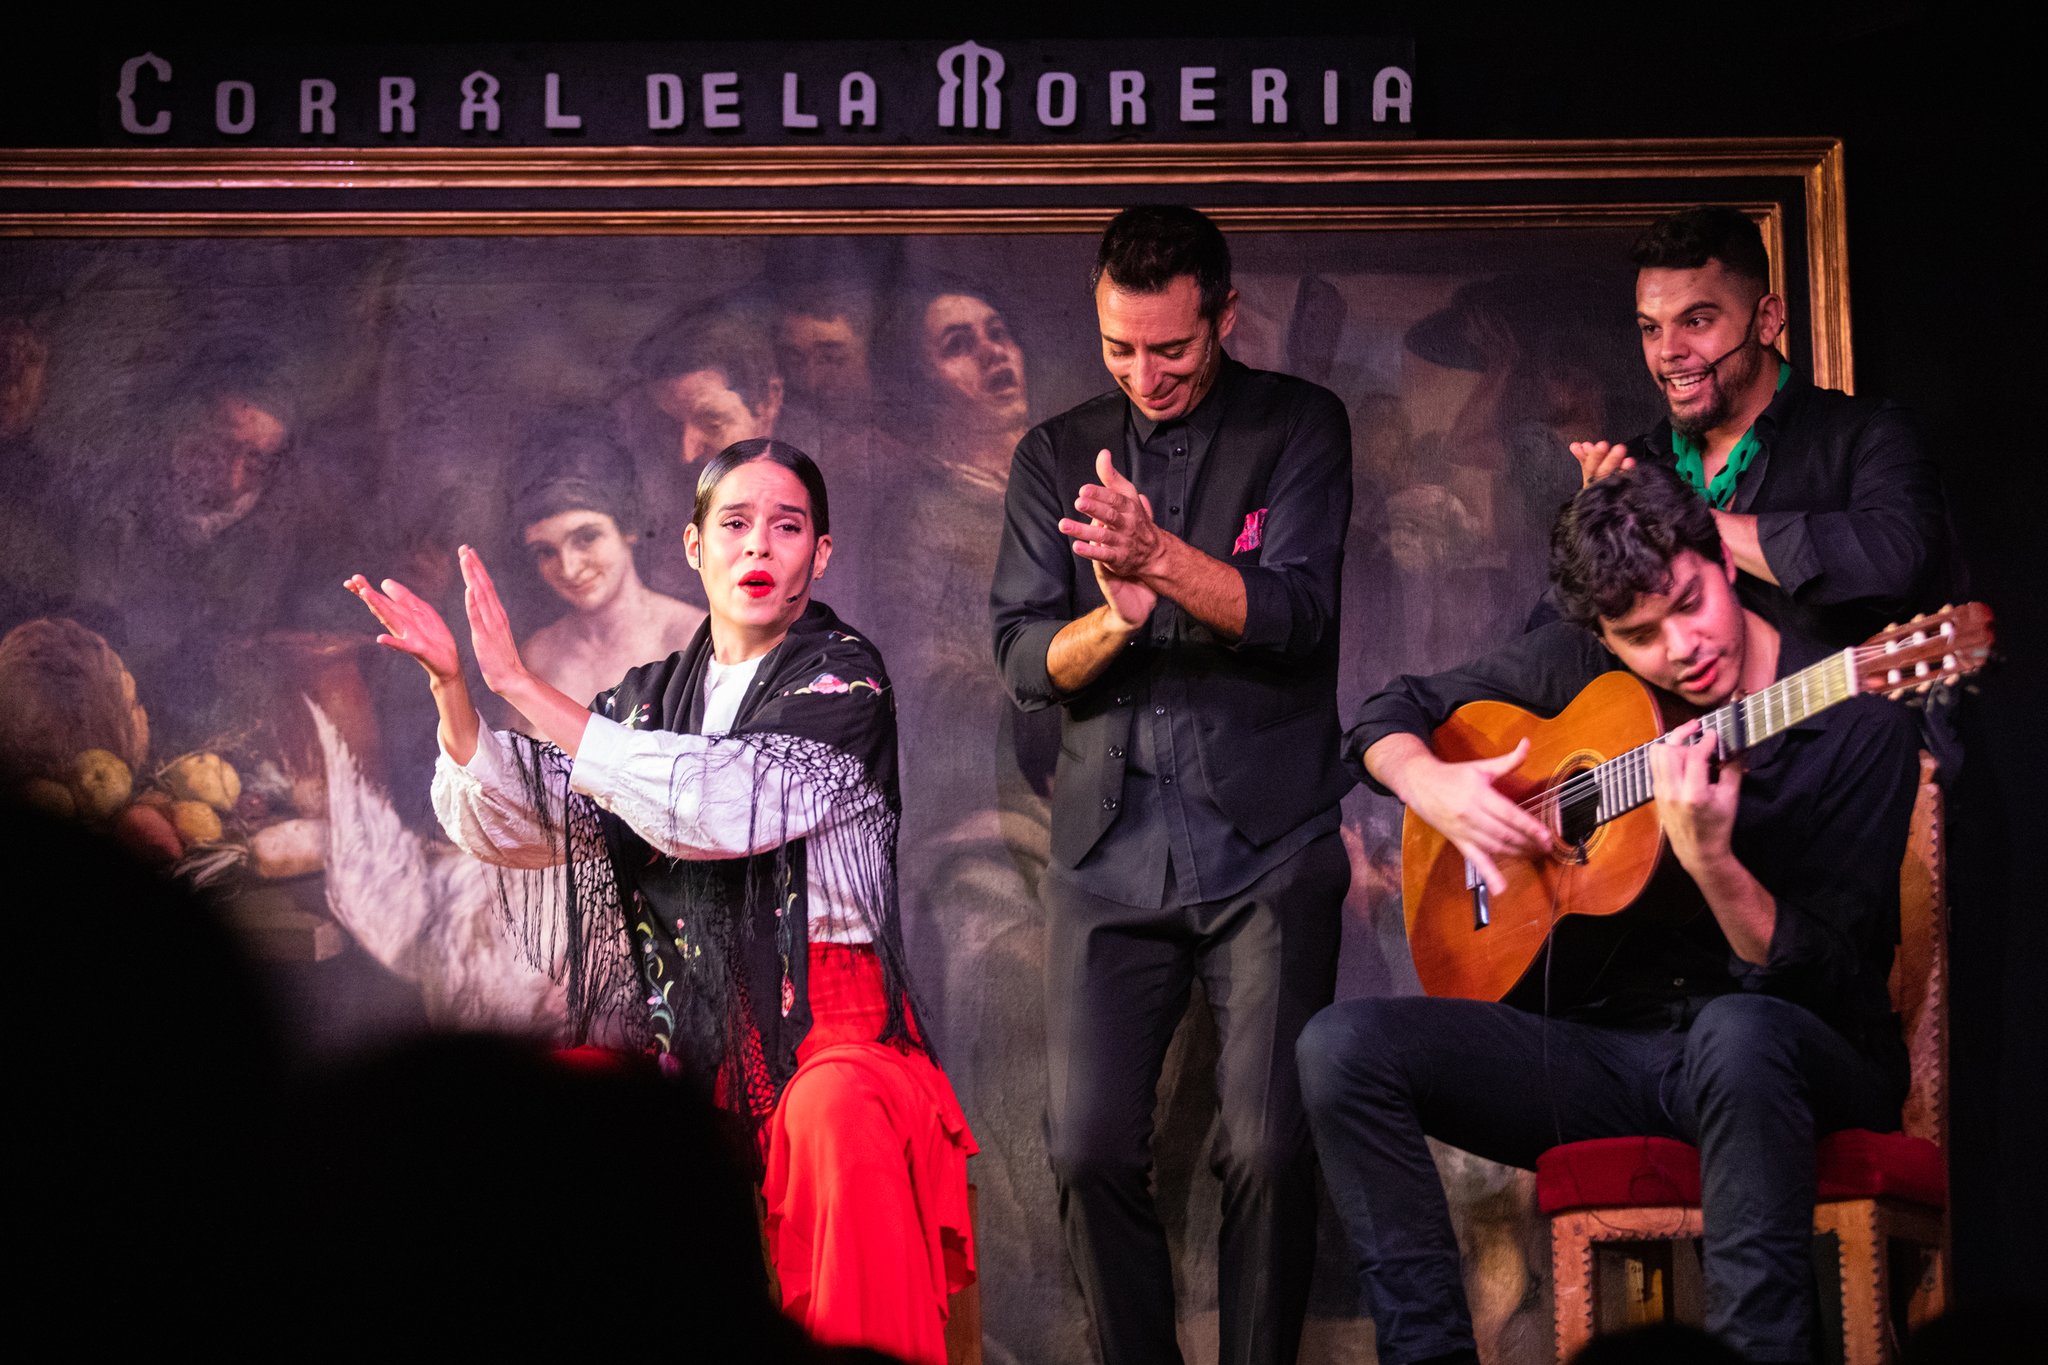 '코랄 데 라 모레리아'에서는 수준급 플라멩코 공연을 감상할 수 있다.